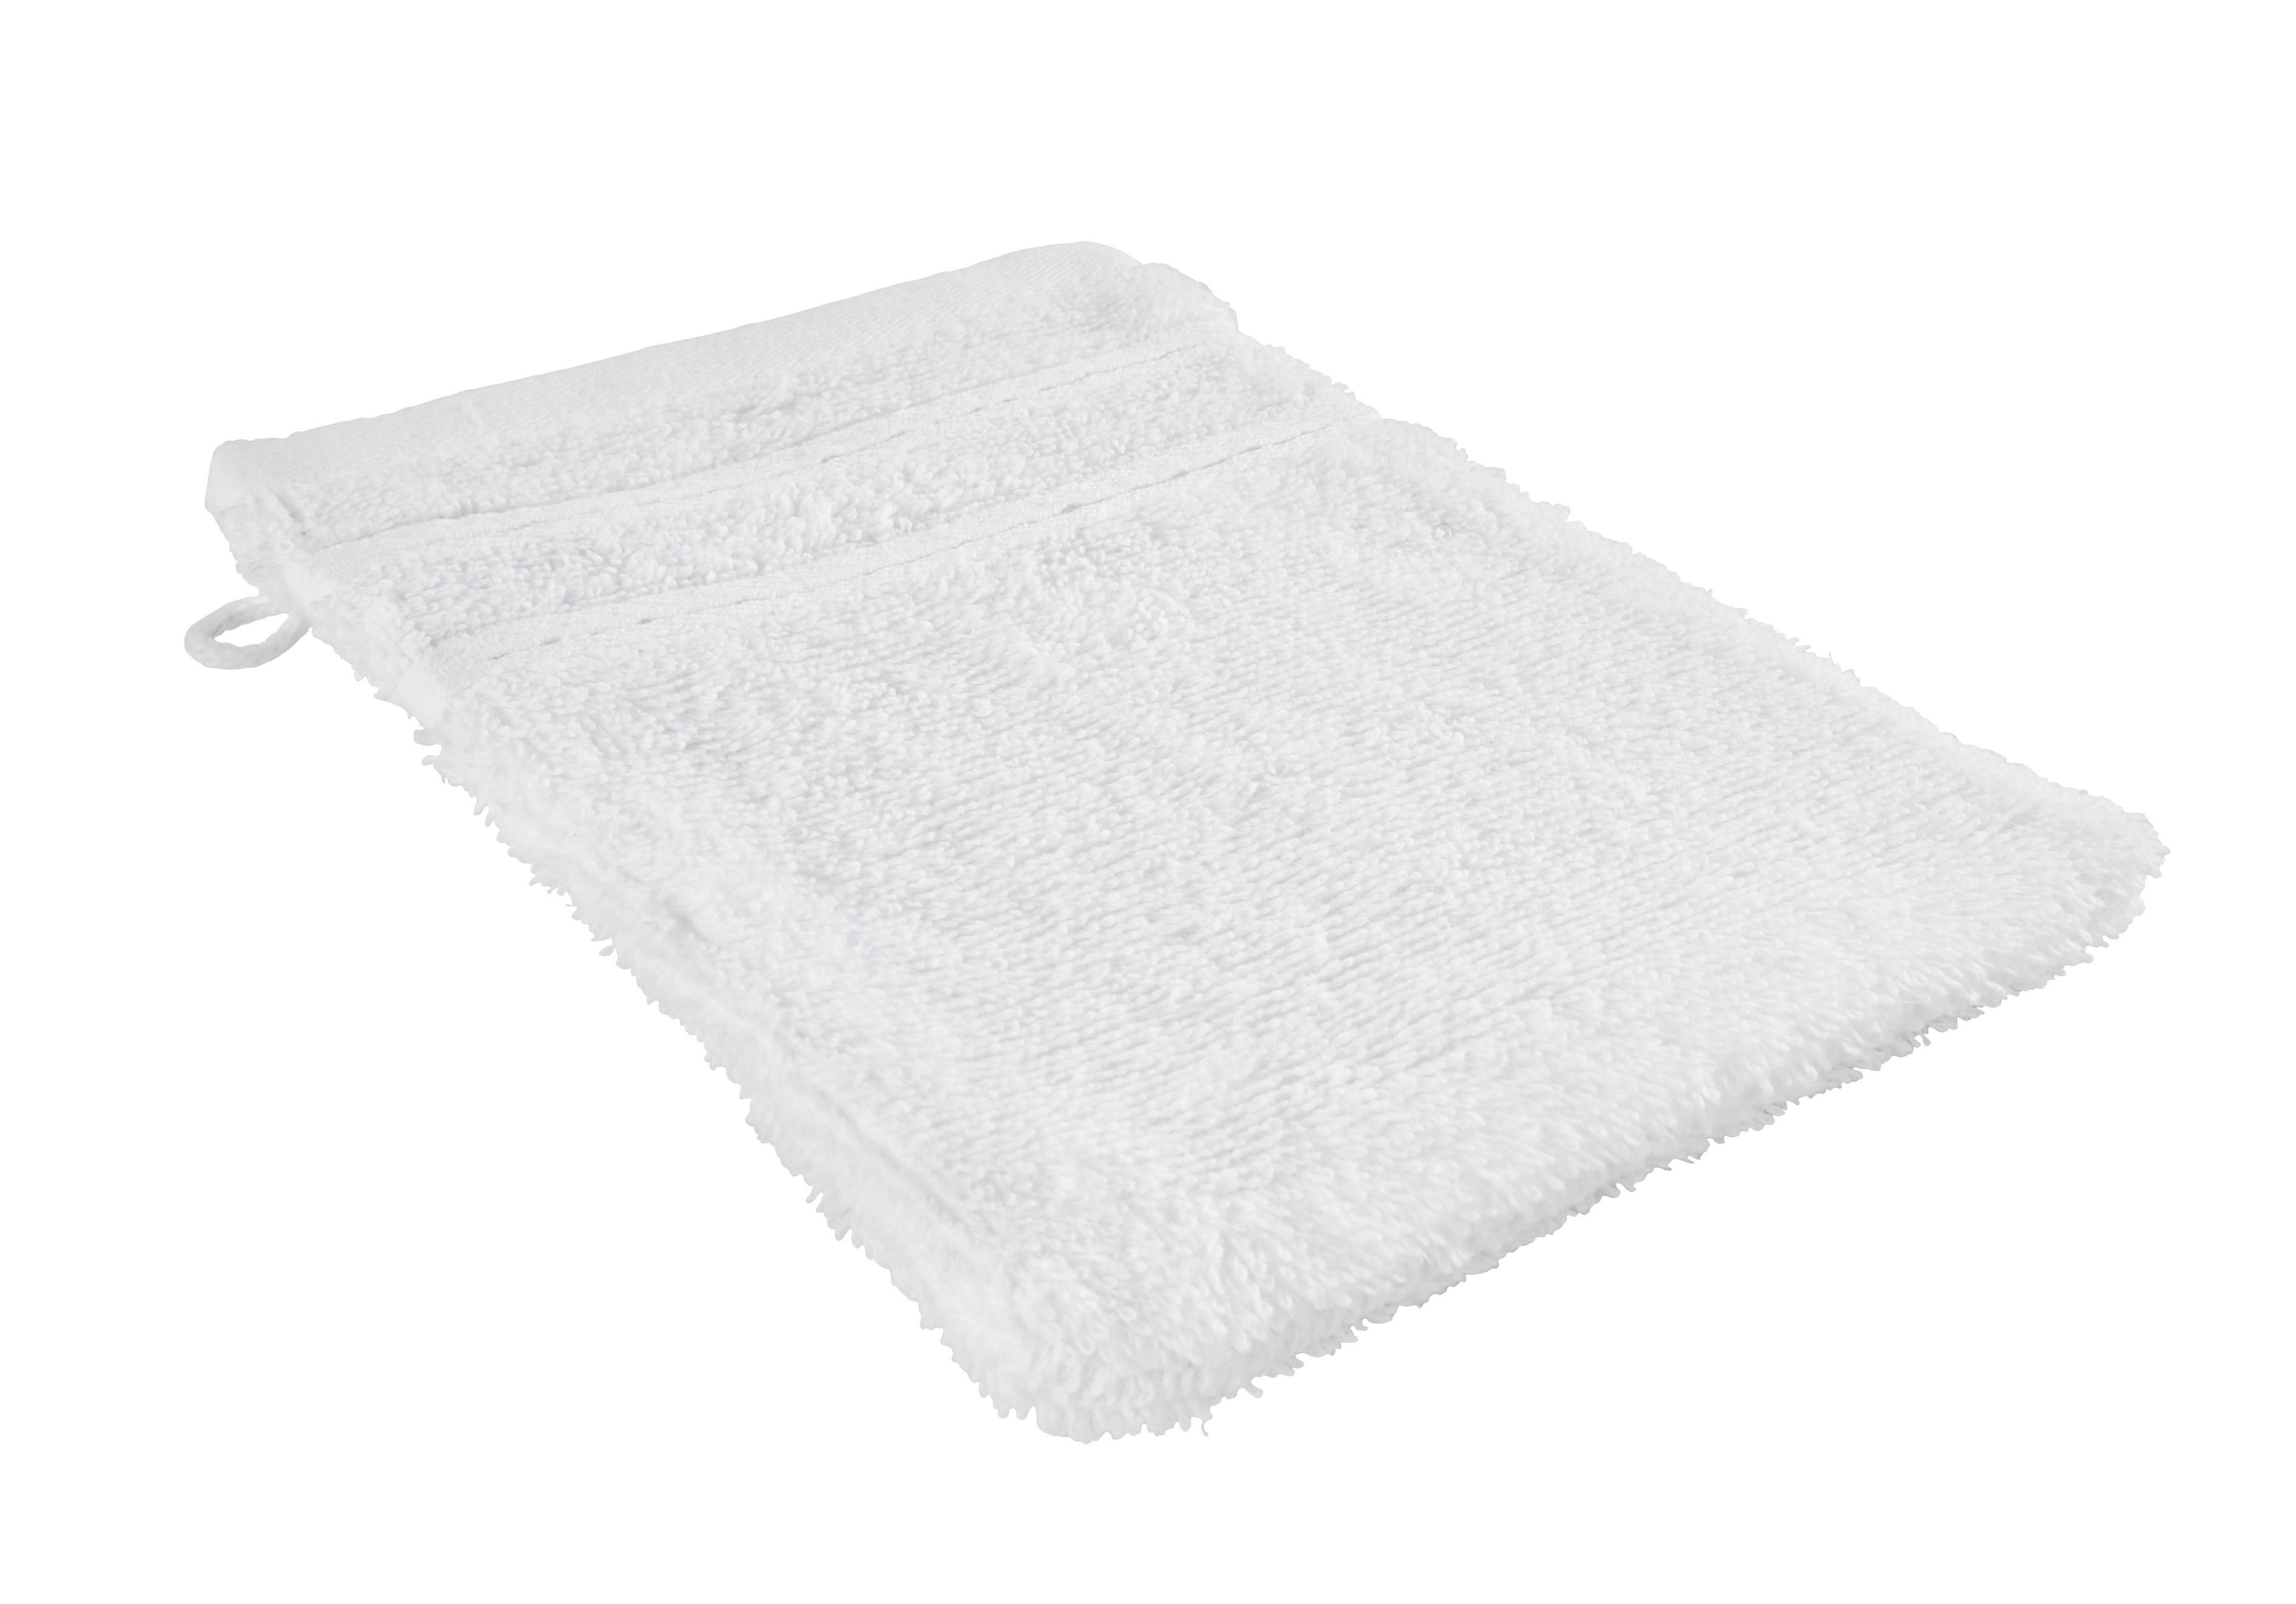 Waschhandschuh Melanie in Weiß ca. 16x21cm - Weiß, Textil (16/21cm) - Modern Living